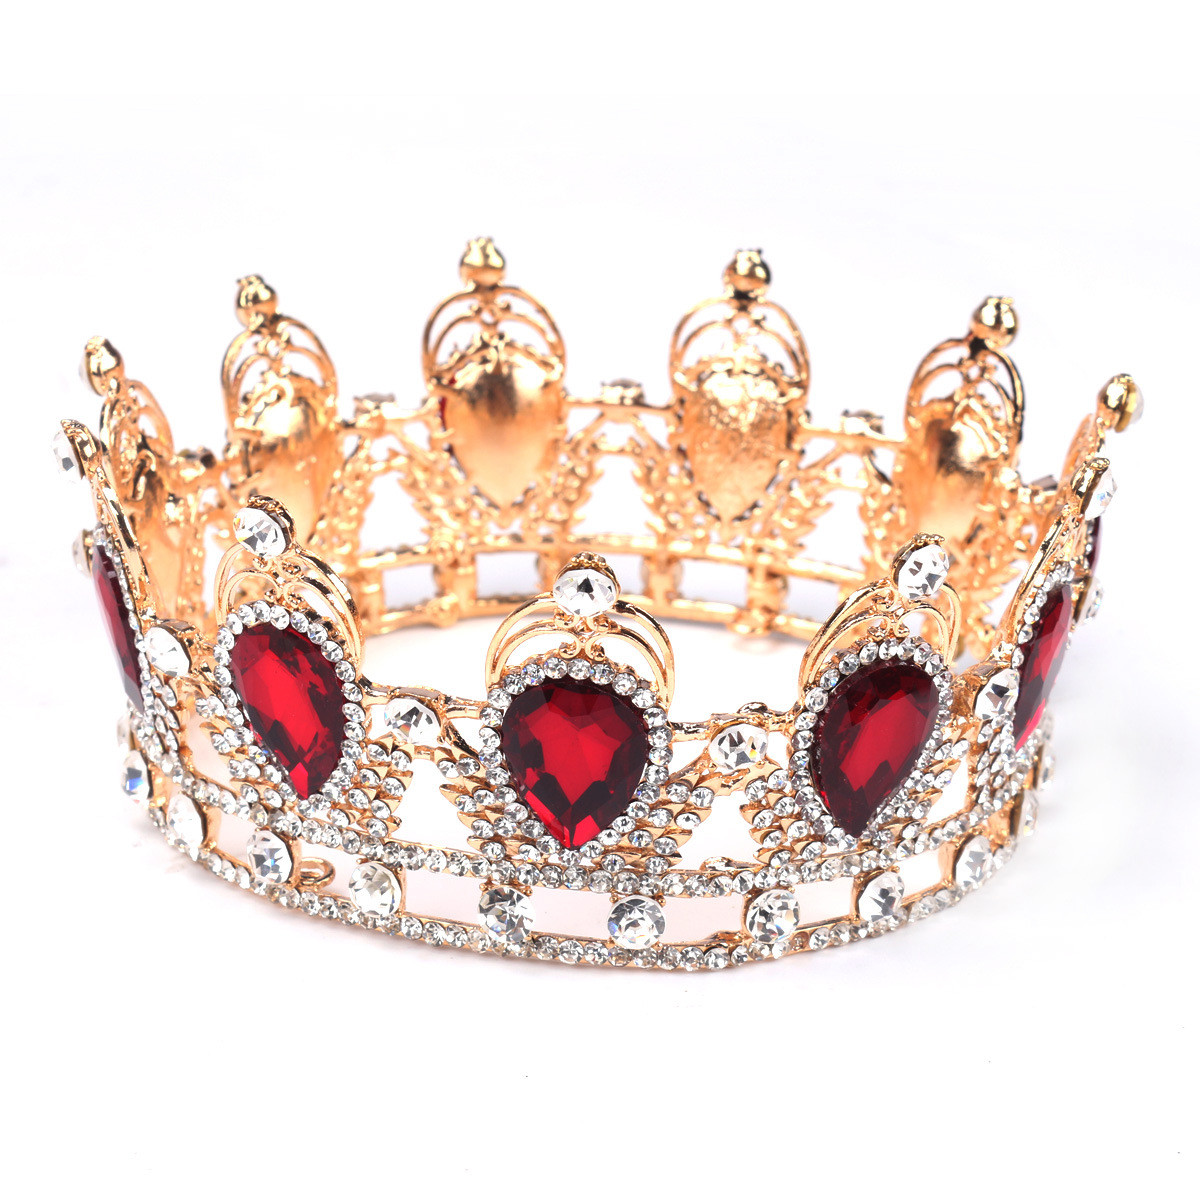 

Невеста рубиновый игристое кристалл горный хрусталь корону золотой король королева тиару свадьба головной убор